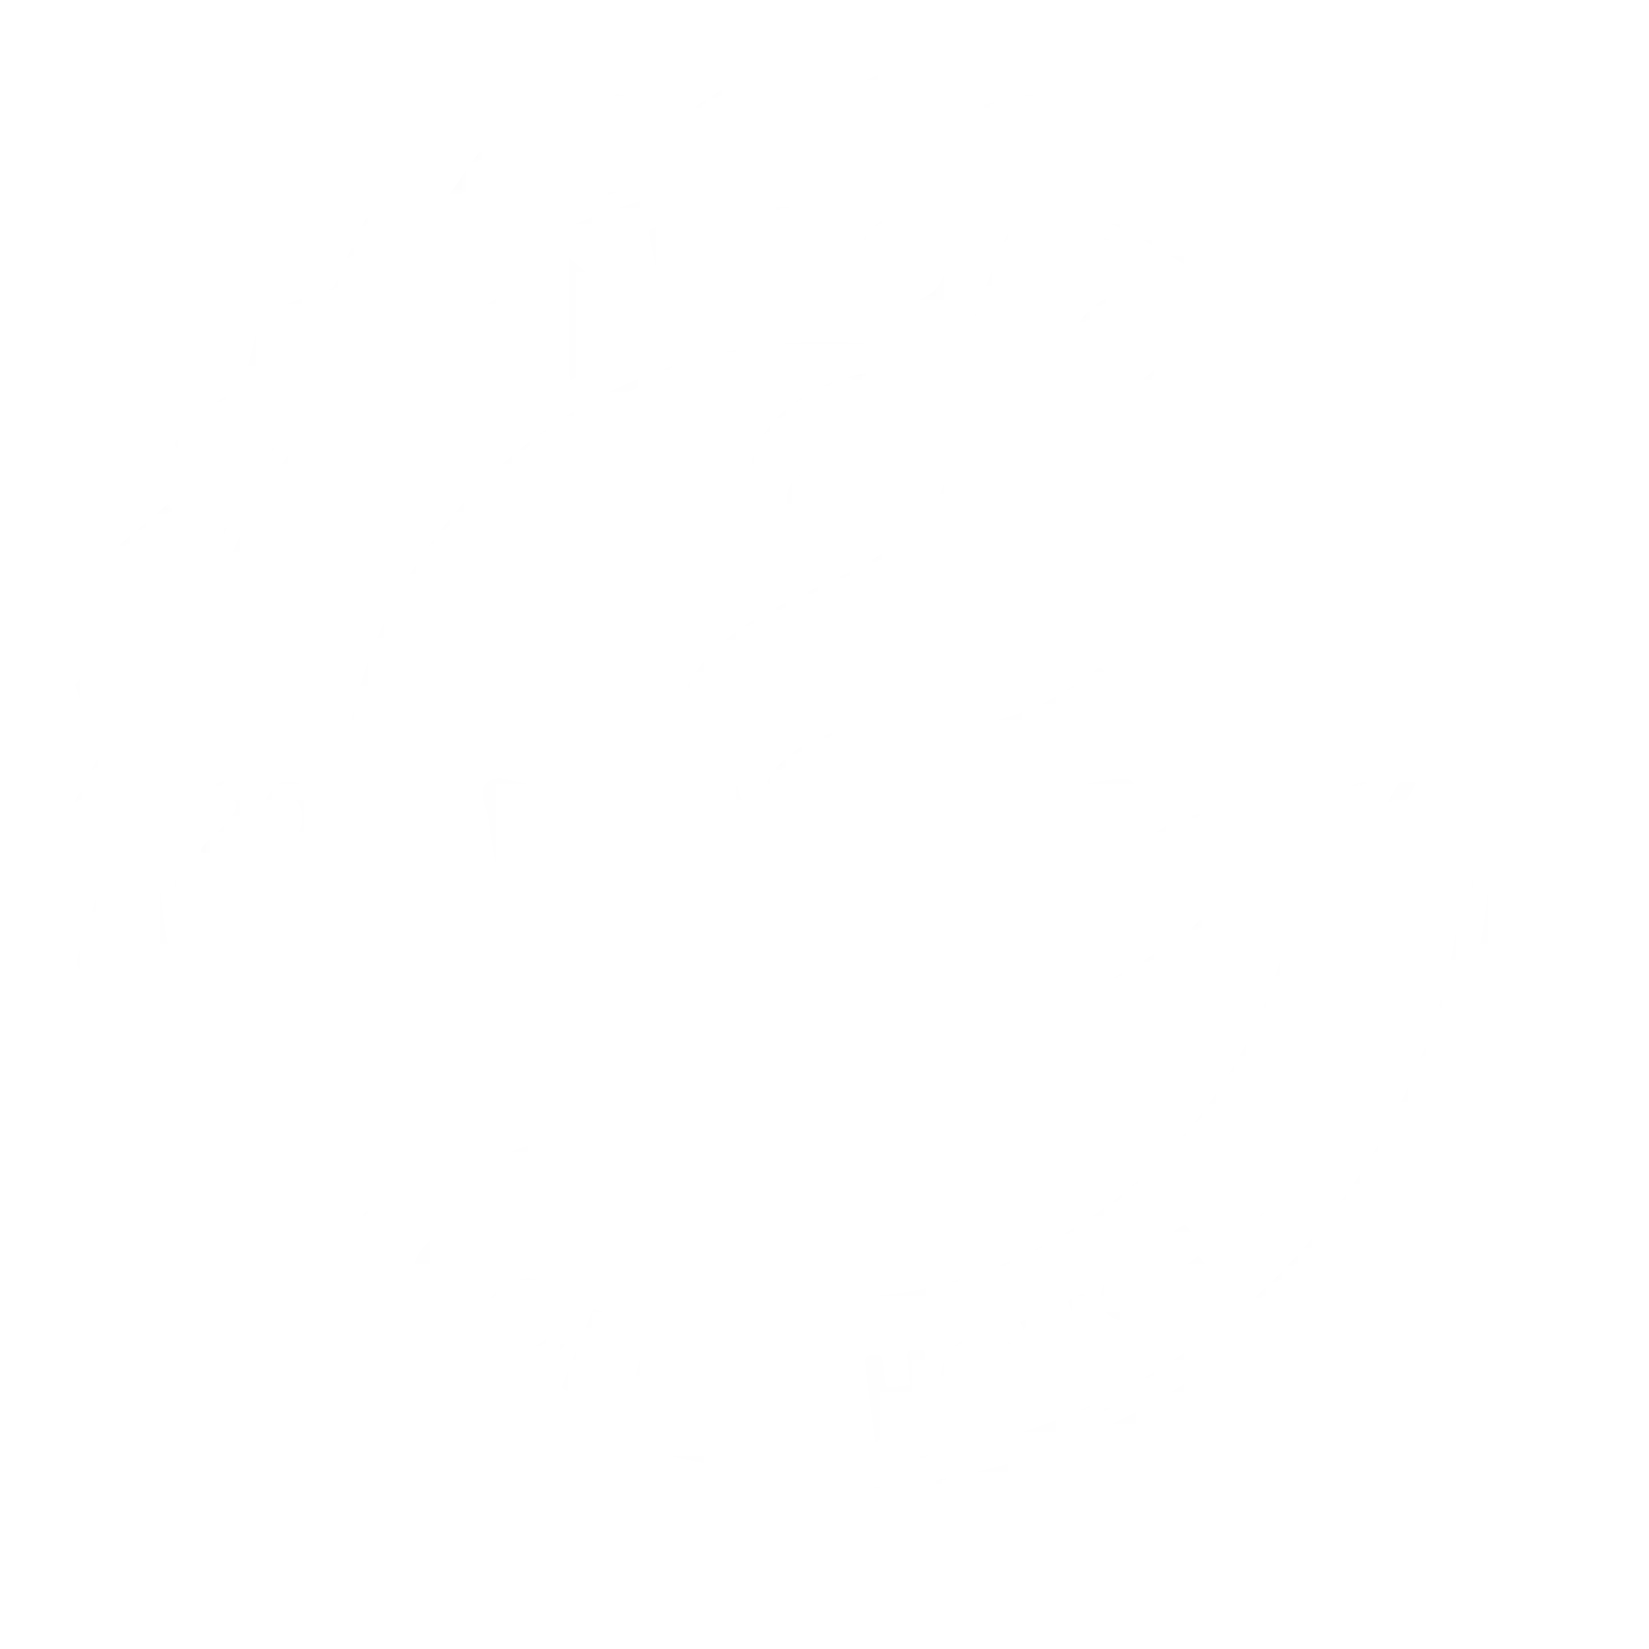 Tarboro Coffee house logo app